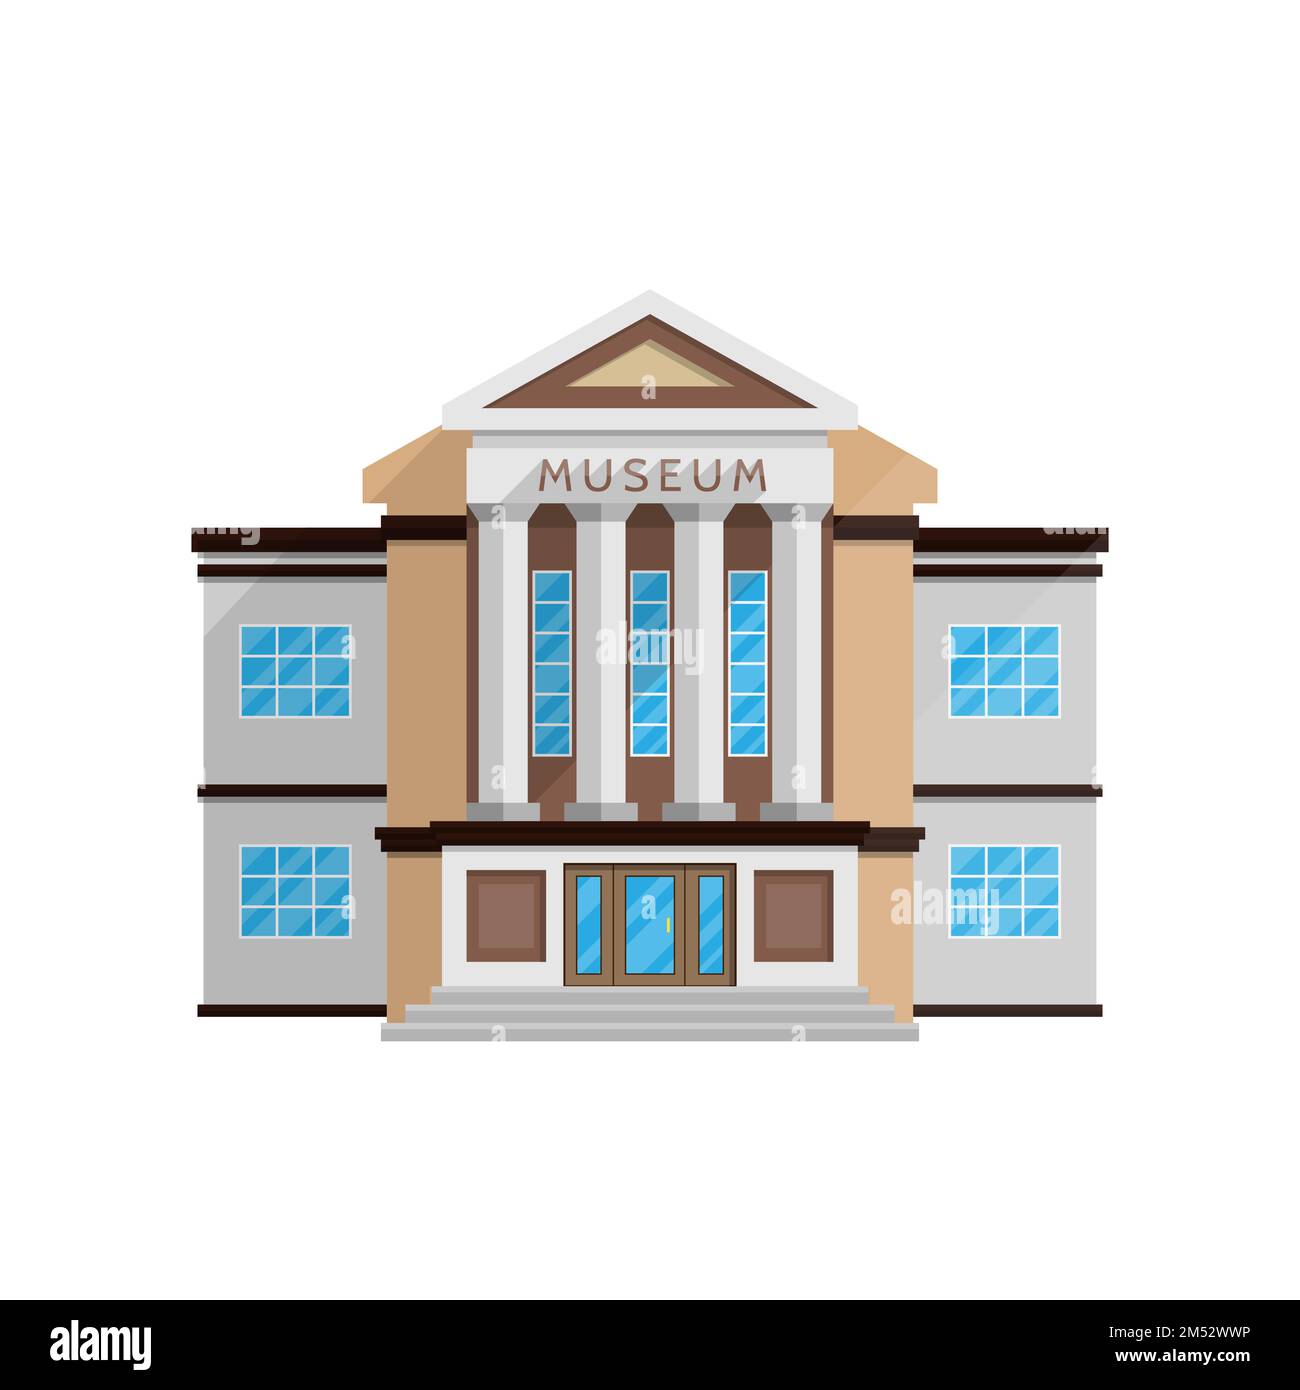 Edificio del museo en estilo plano aislado en fondo blanco ilustración vectorial. Arquitectura clásica, exposiciones de monumentos culturales, programa cultural Ilustración del Vector